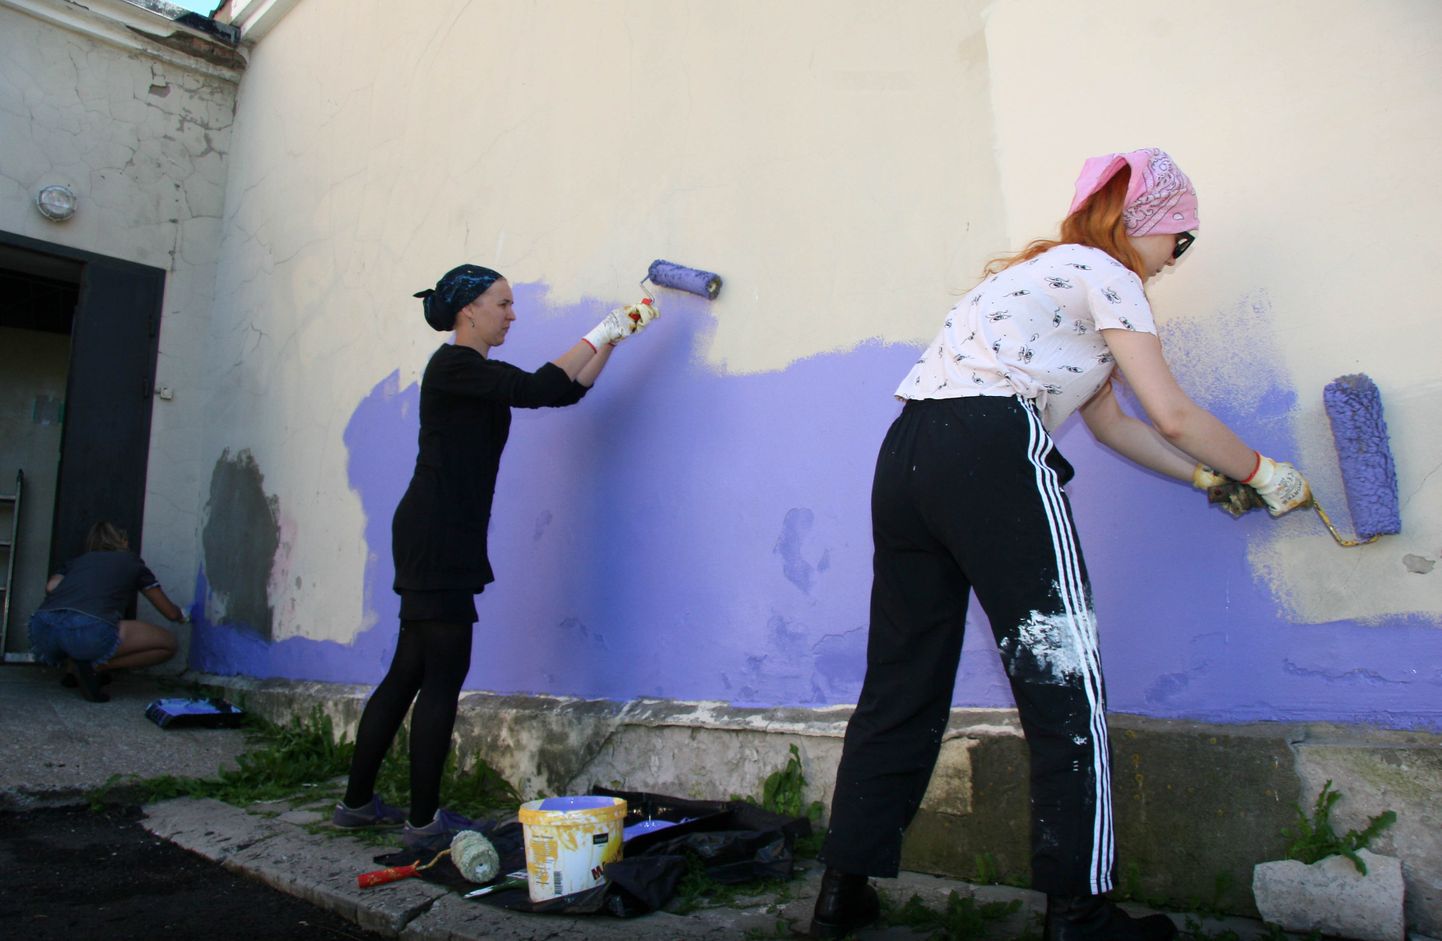 Участницы "Rural Urban Art" Крислин Виркус, Крислен Кахр и Яна Персидски готовят поле для творчества выпускницы Эстонской художественной академии Лийзи Грюнберг, которая готова удивить кохтлаярвесцев.